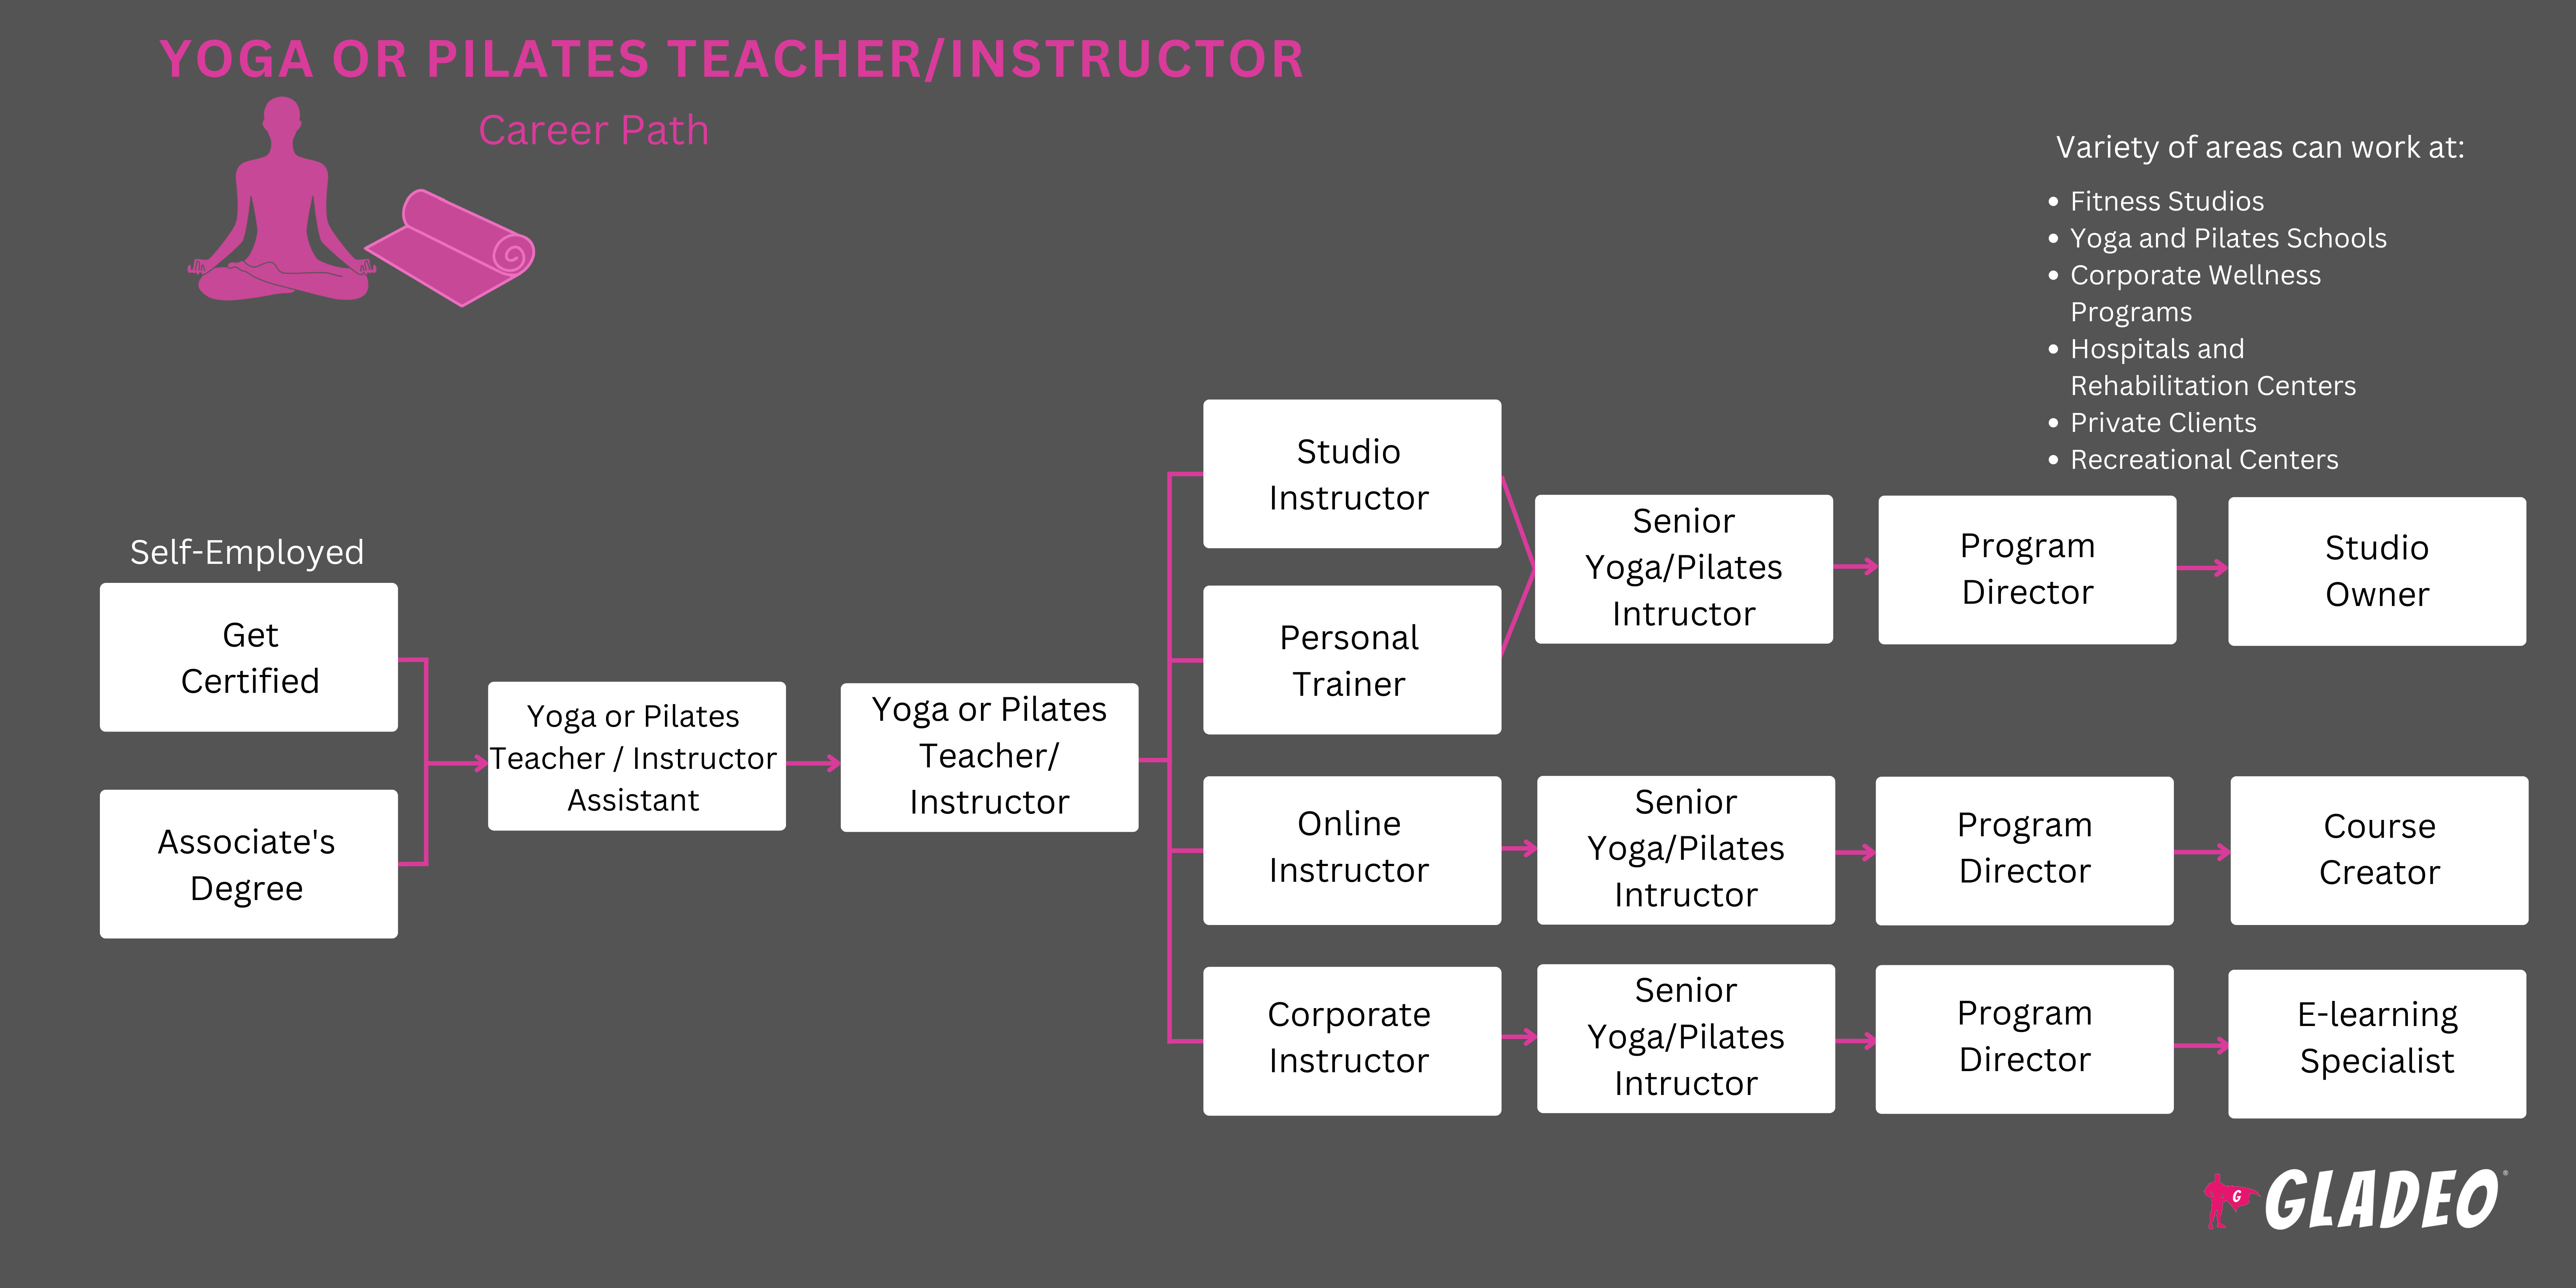 瑜伽或普拉提教师/教练路线图